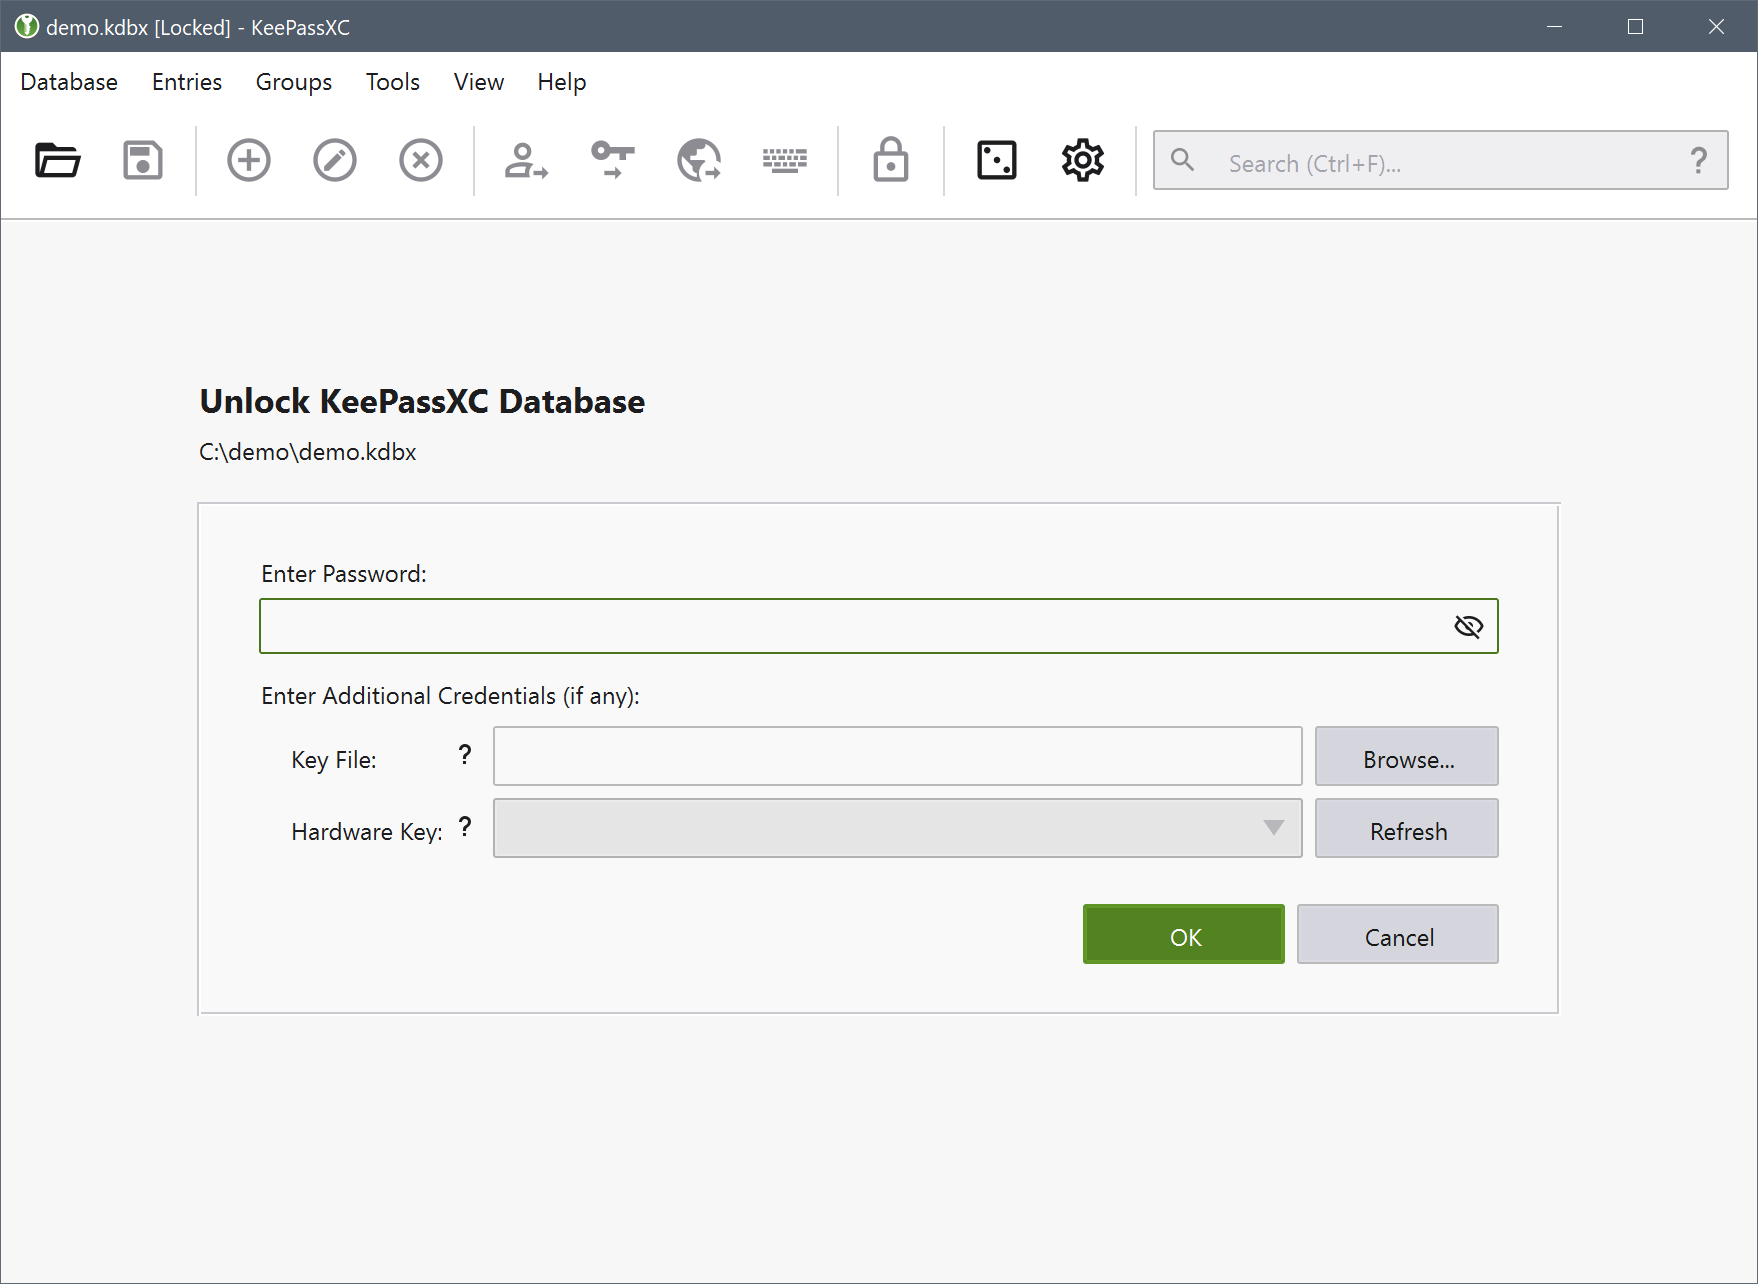 Open KeePassXC database